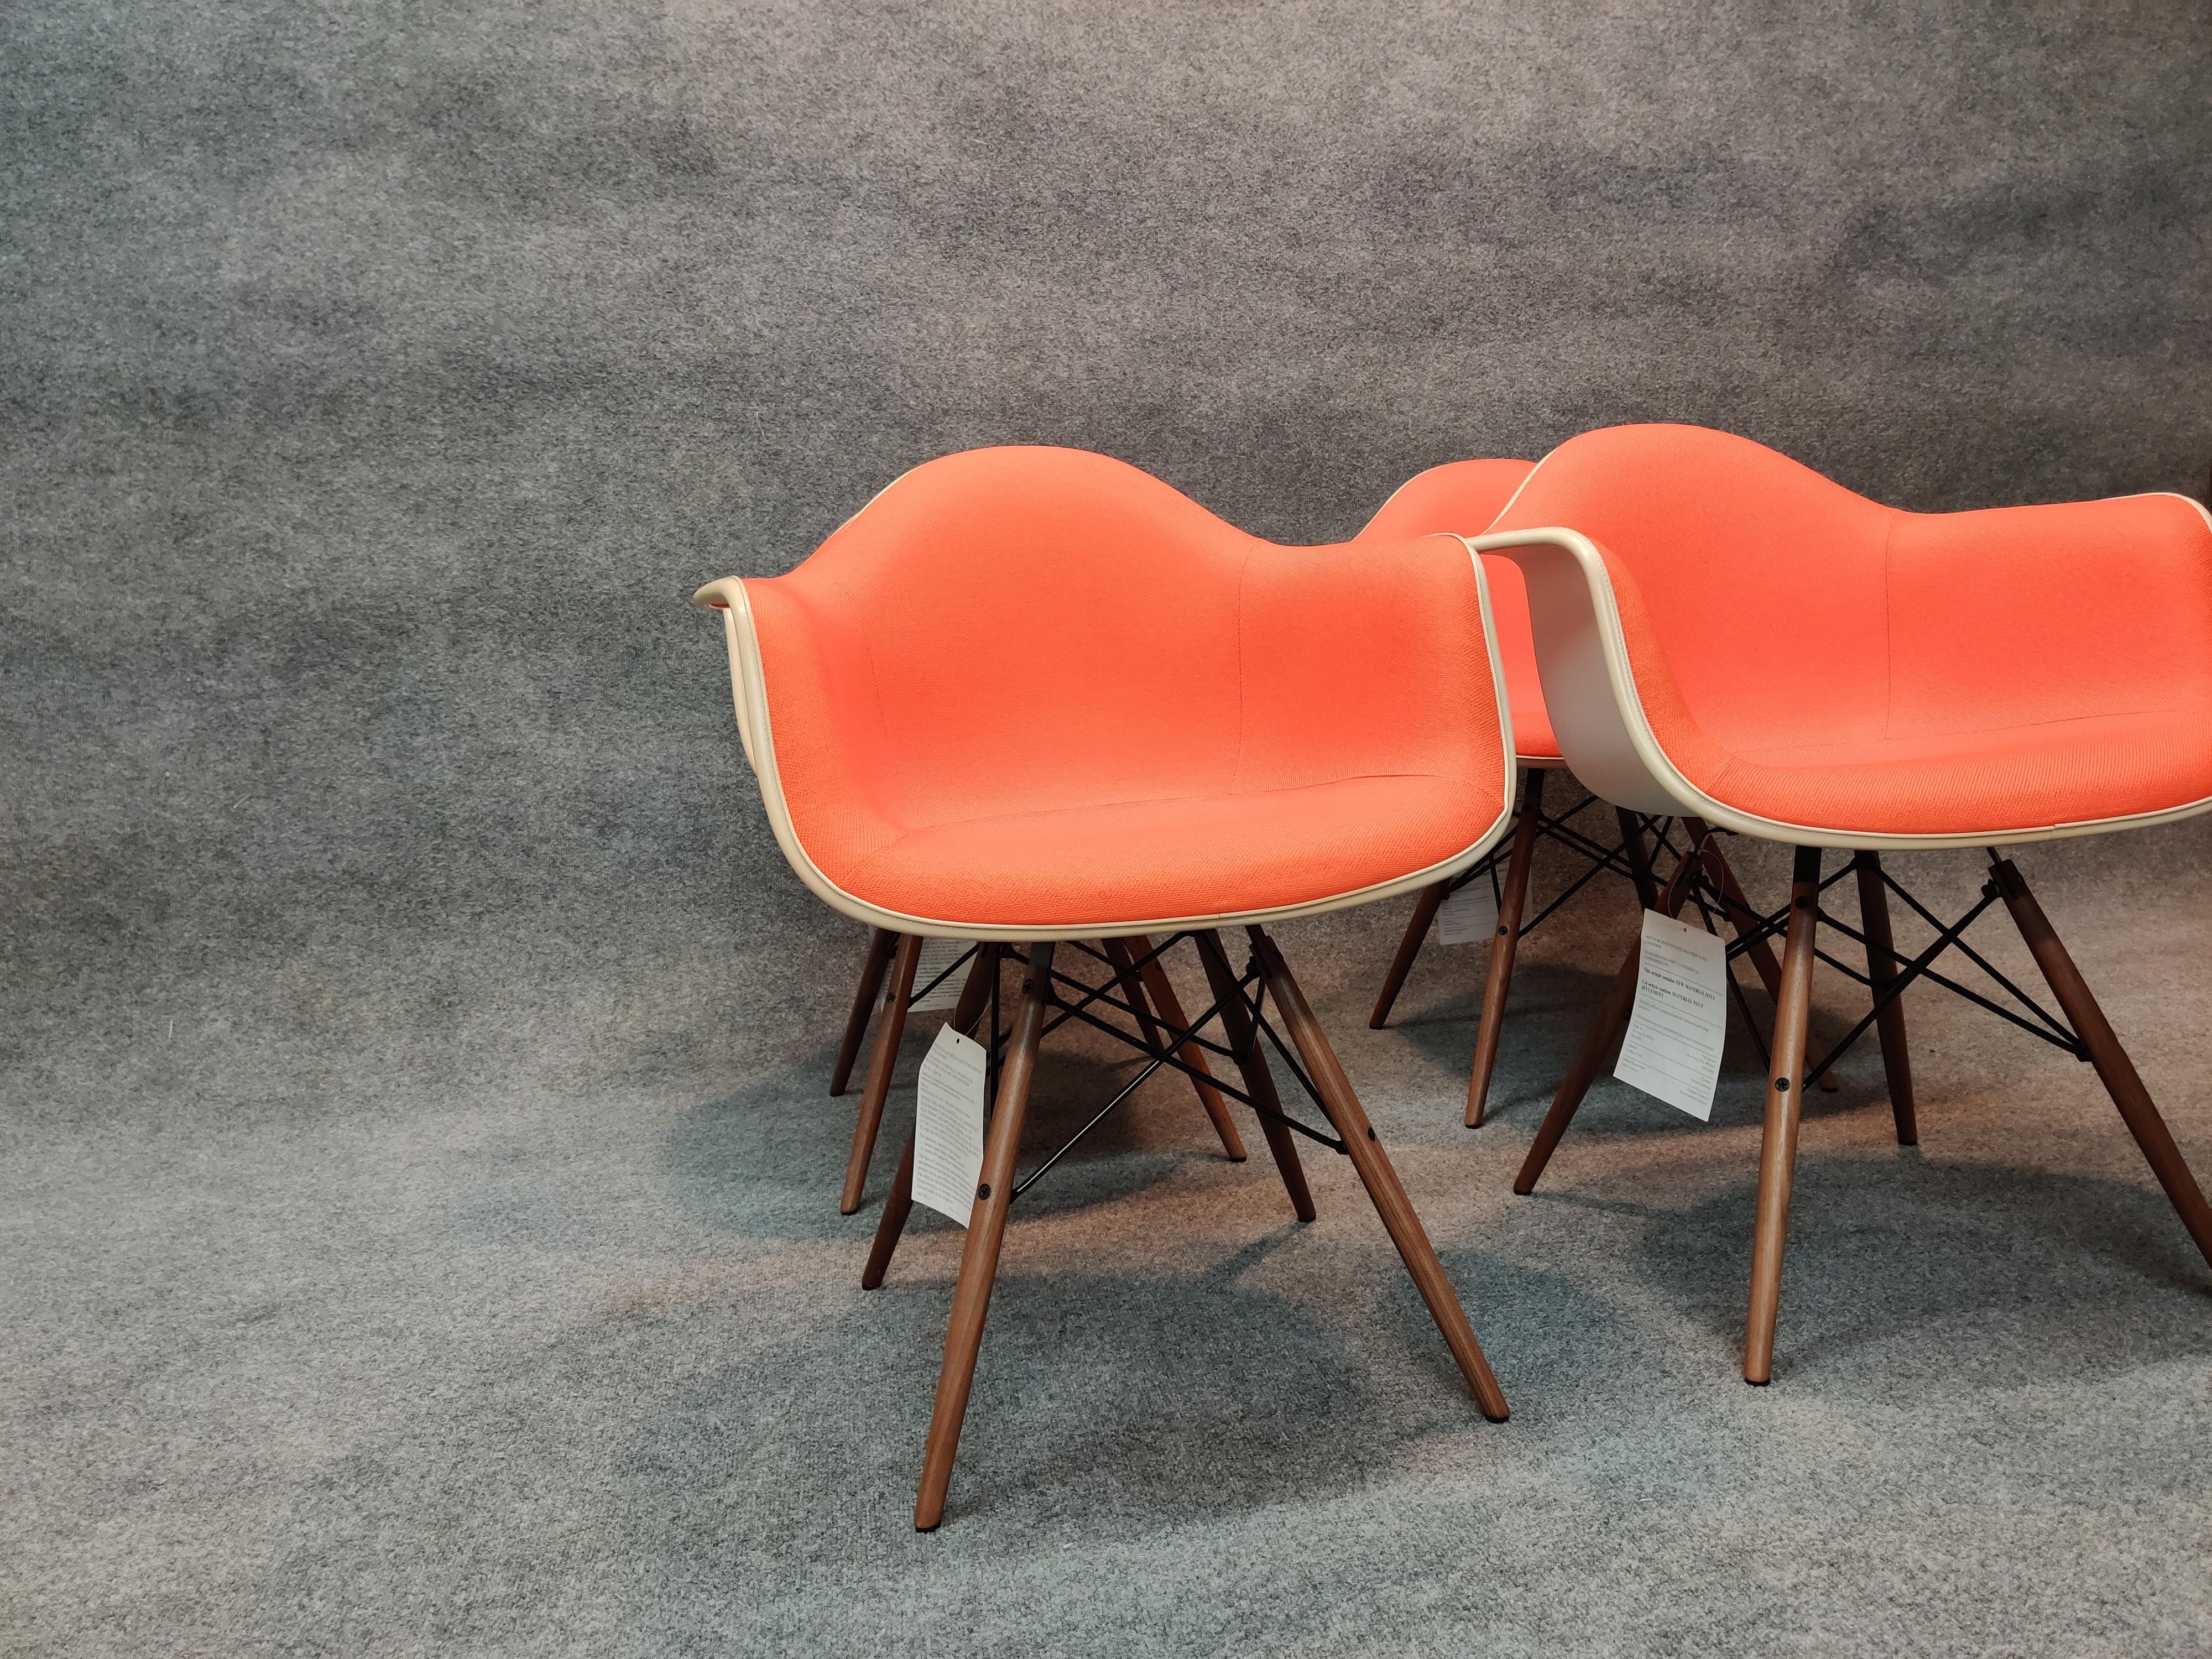 Diese signierten Stühle wurden von den Eames entworfen und vor kurzem von Herman Miller hergestellt. Sie sind in einem neuwertigen Zustand. Die Schalen sind aus weißem Kunststoff und haben ein weißes Band, das die leuchtend orangefarbene Polsterung